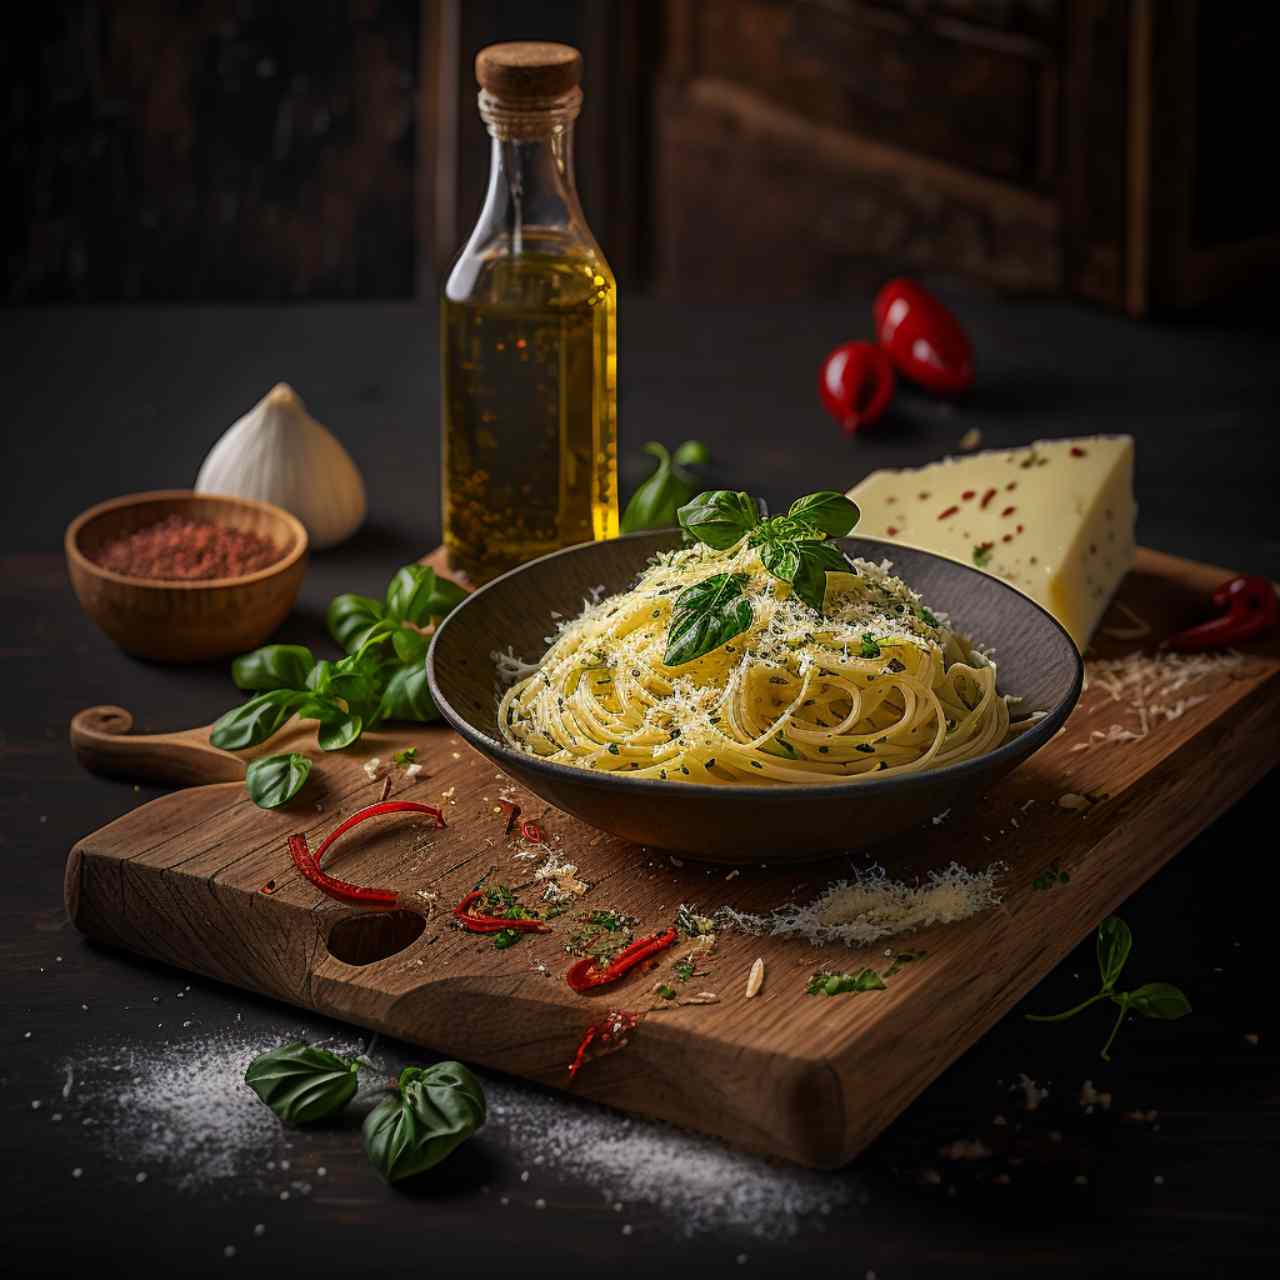 Spaghetti Aglio E Olio Recipe for A 100 People